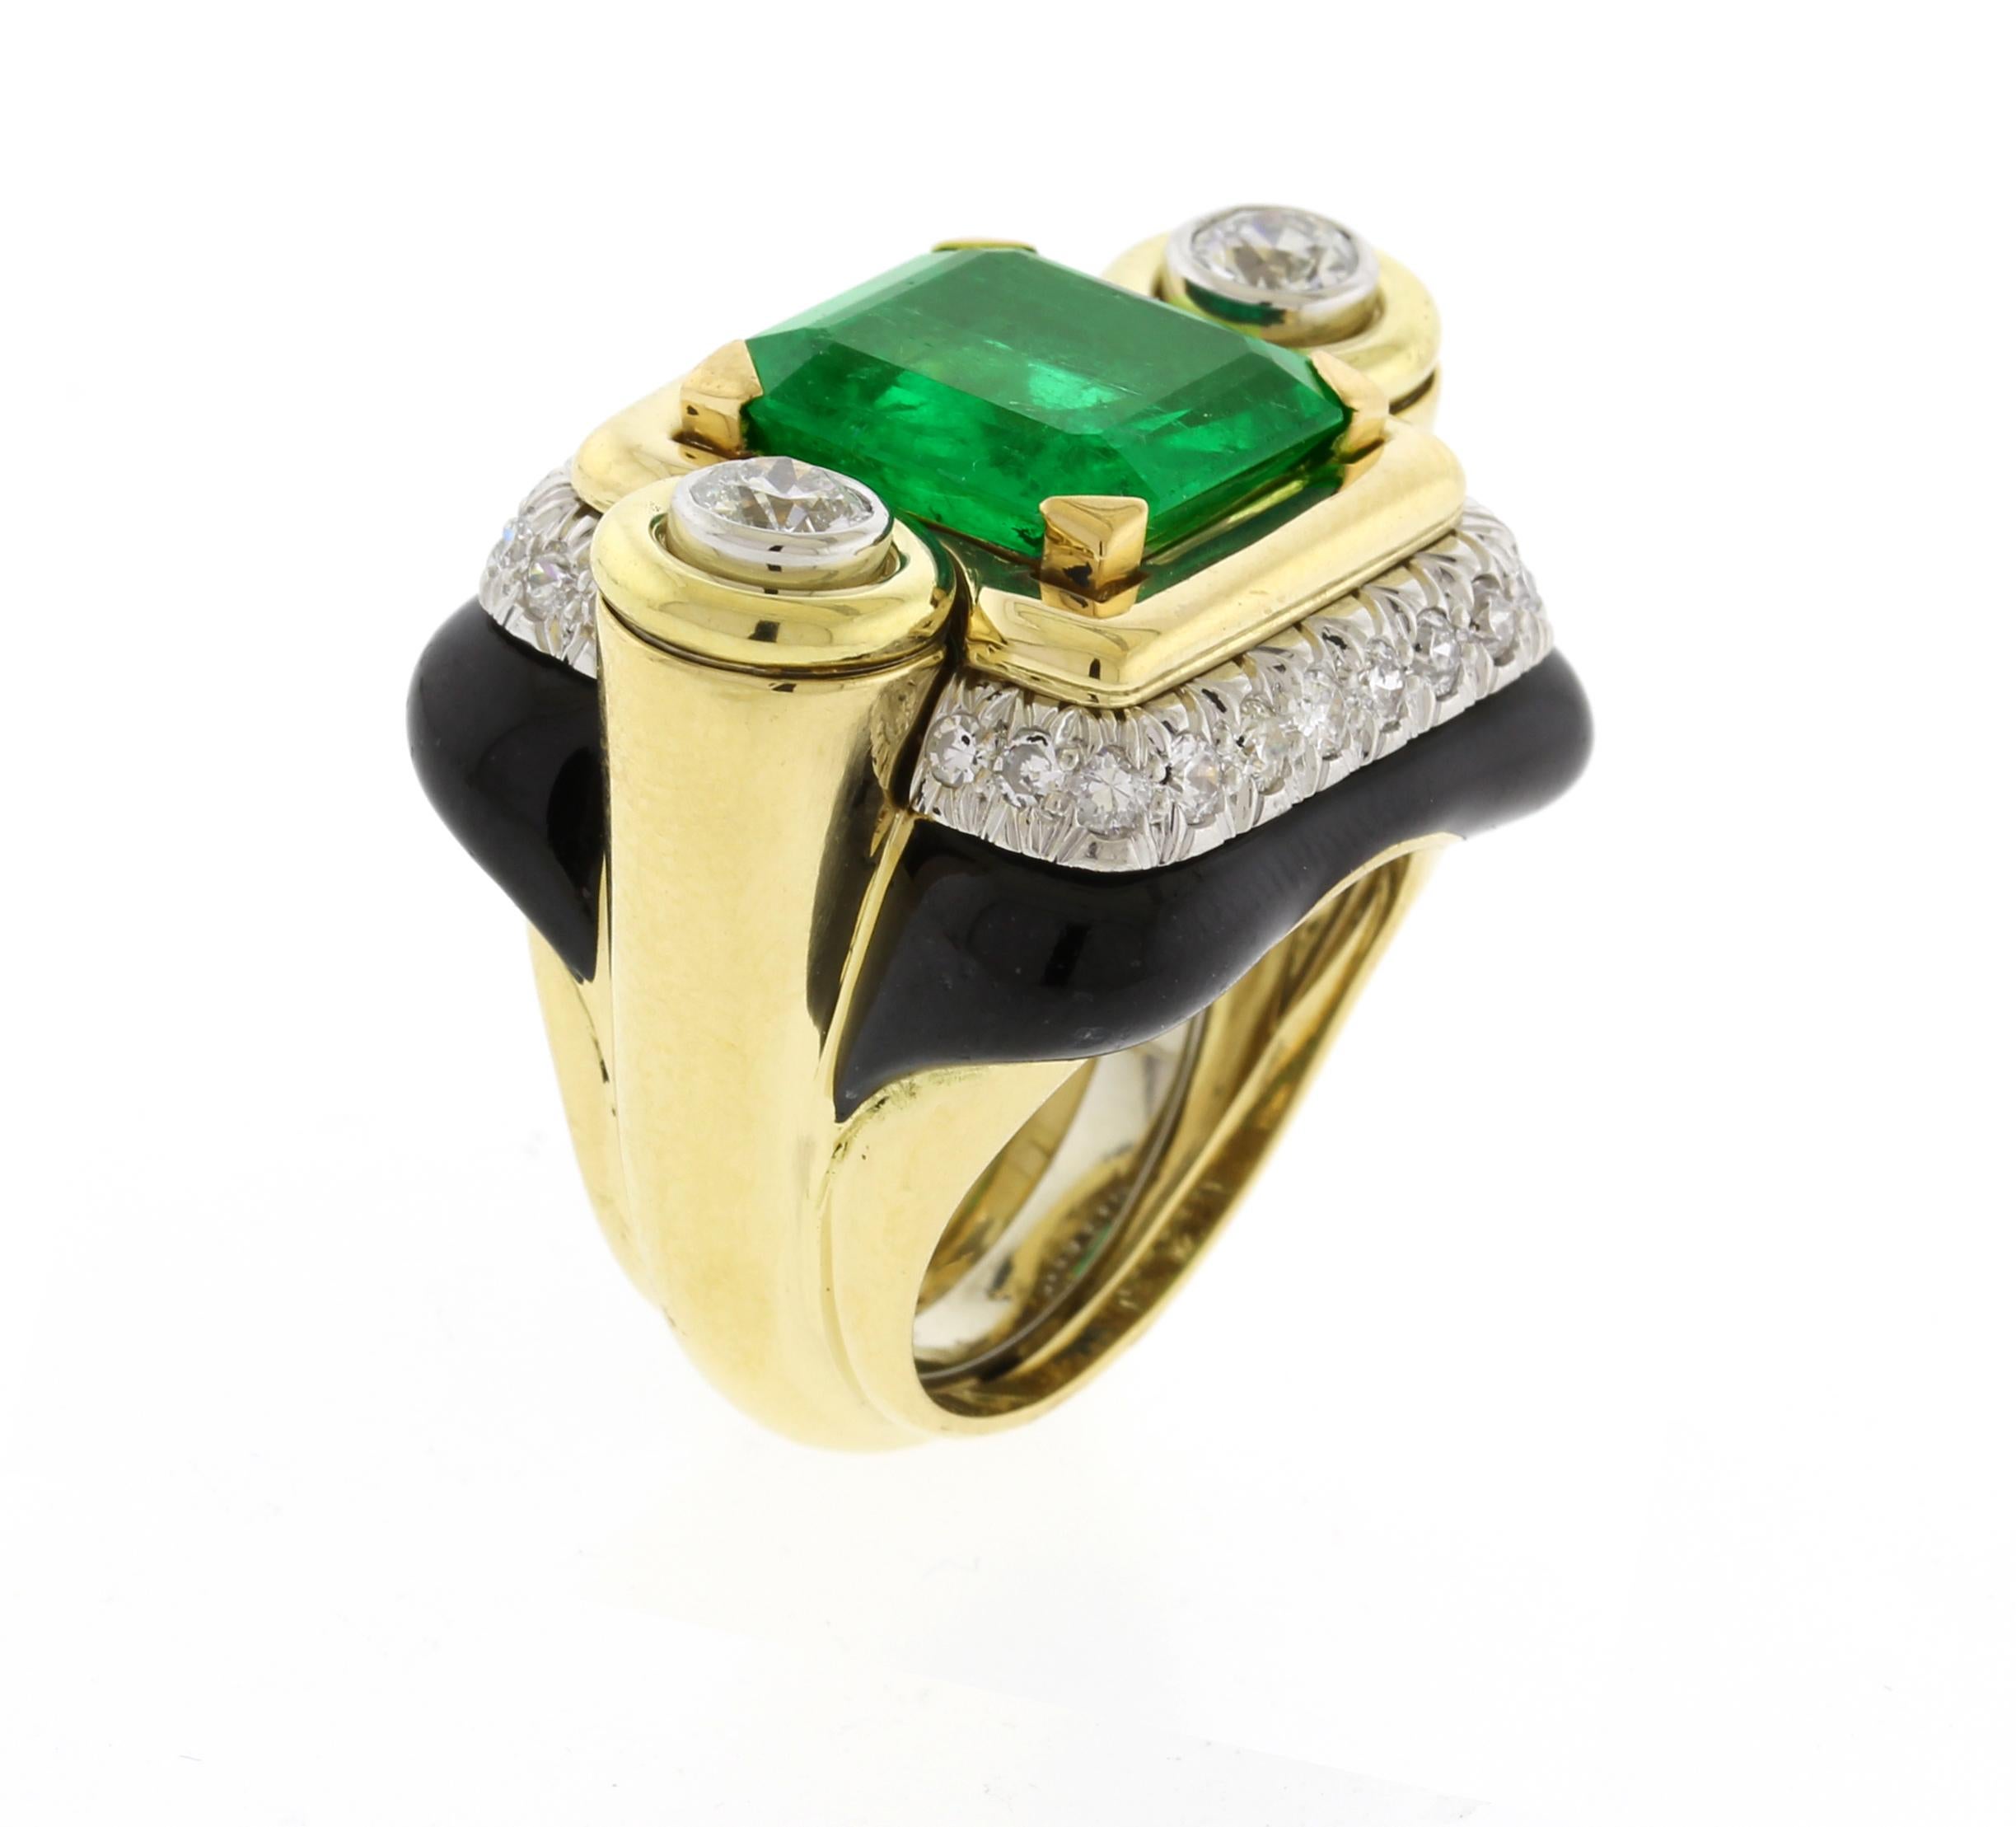 Ein schöner Smaragdring mit Diamanten und schwarzer Emaille von David Webb.  Der Ring ist mit einem U-Schutz versehen.
- • Designer: David Webb
- • Metall: 18 Karat Gold
- • Circa: 1980er Jahre
- • Größe: 5, nicht größenveränderbar 
- • Edelsteine: